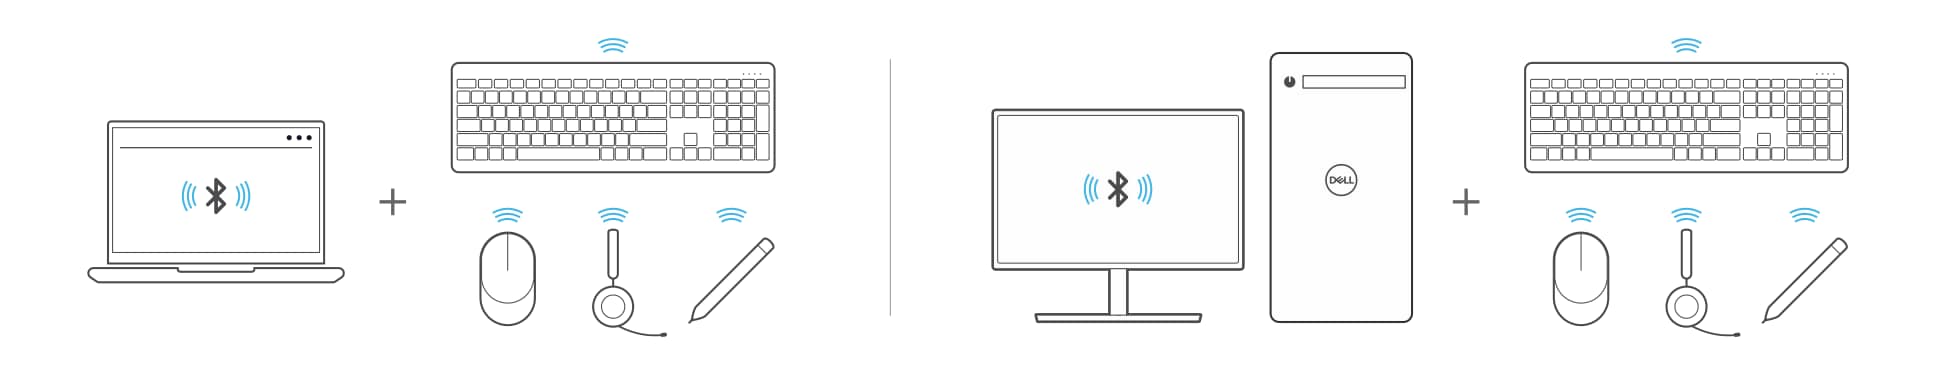 Appairage d’un ordinateur portable et d’un ordinateur de bureau à des appareils Bluetooth tels qu’un clavier, une souris, un casque ou un stylet